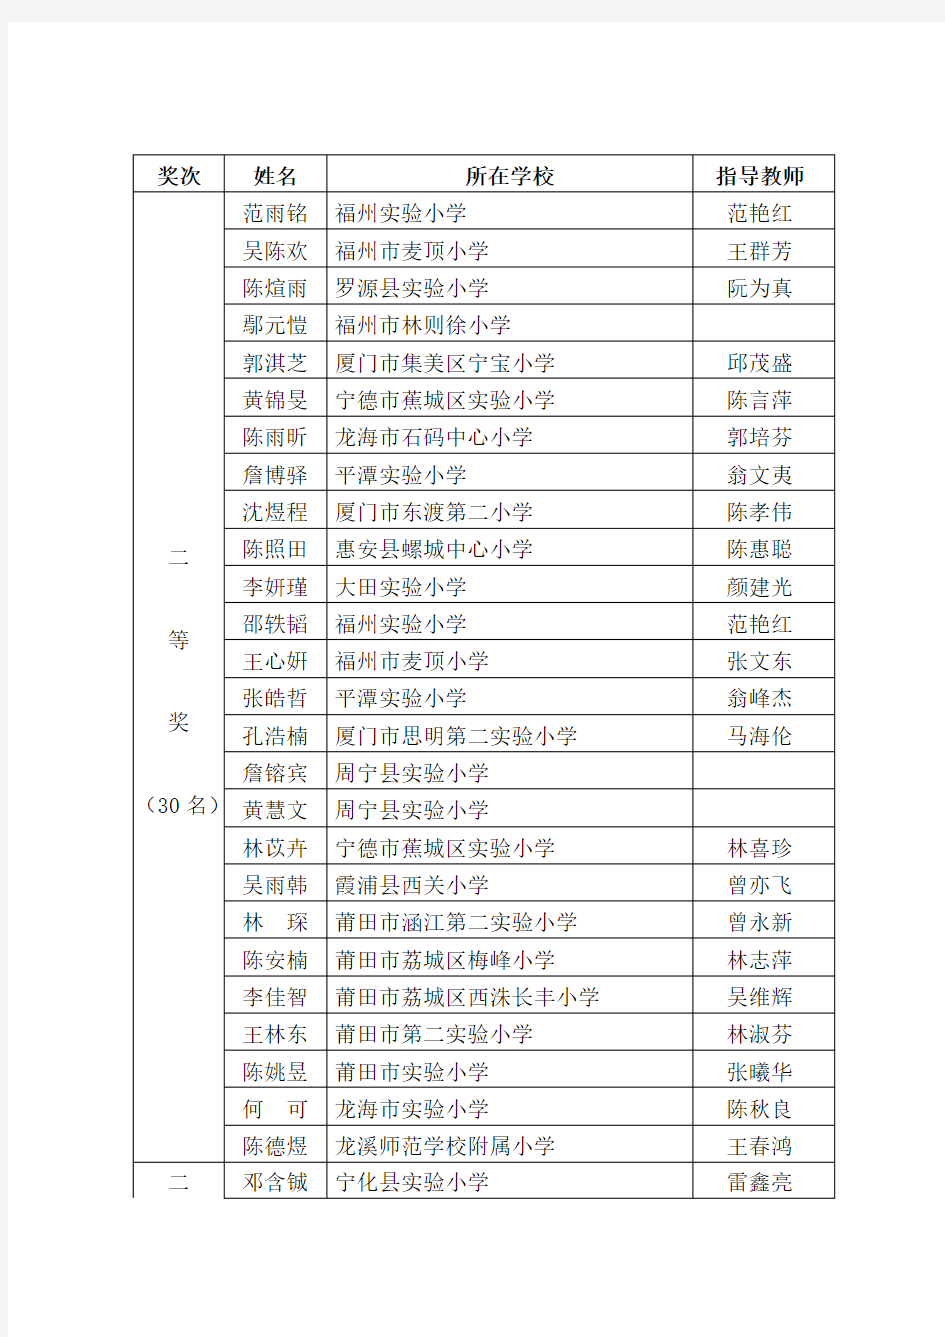 福建省2014-2015年度少年传承中华传统美德之墨香书